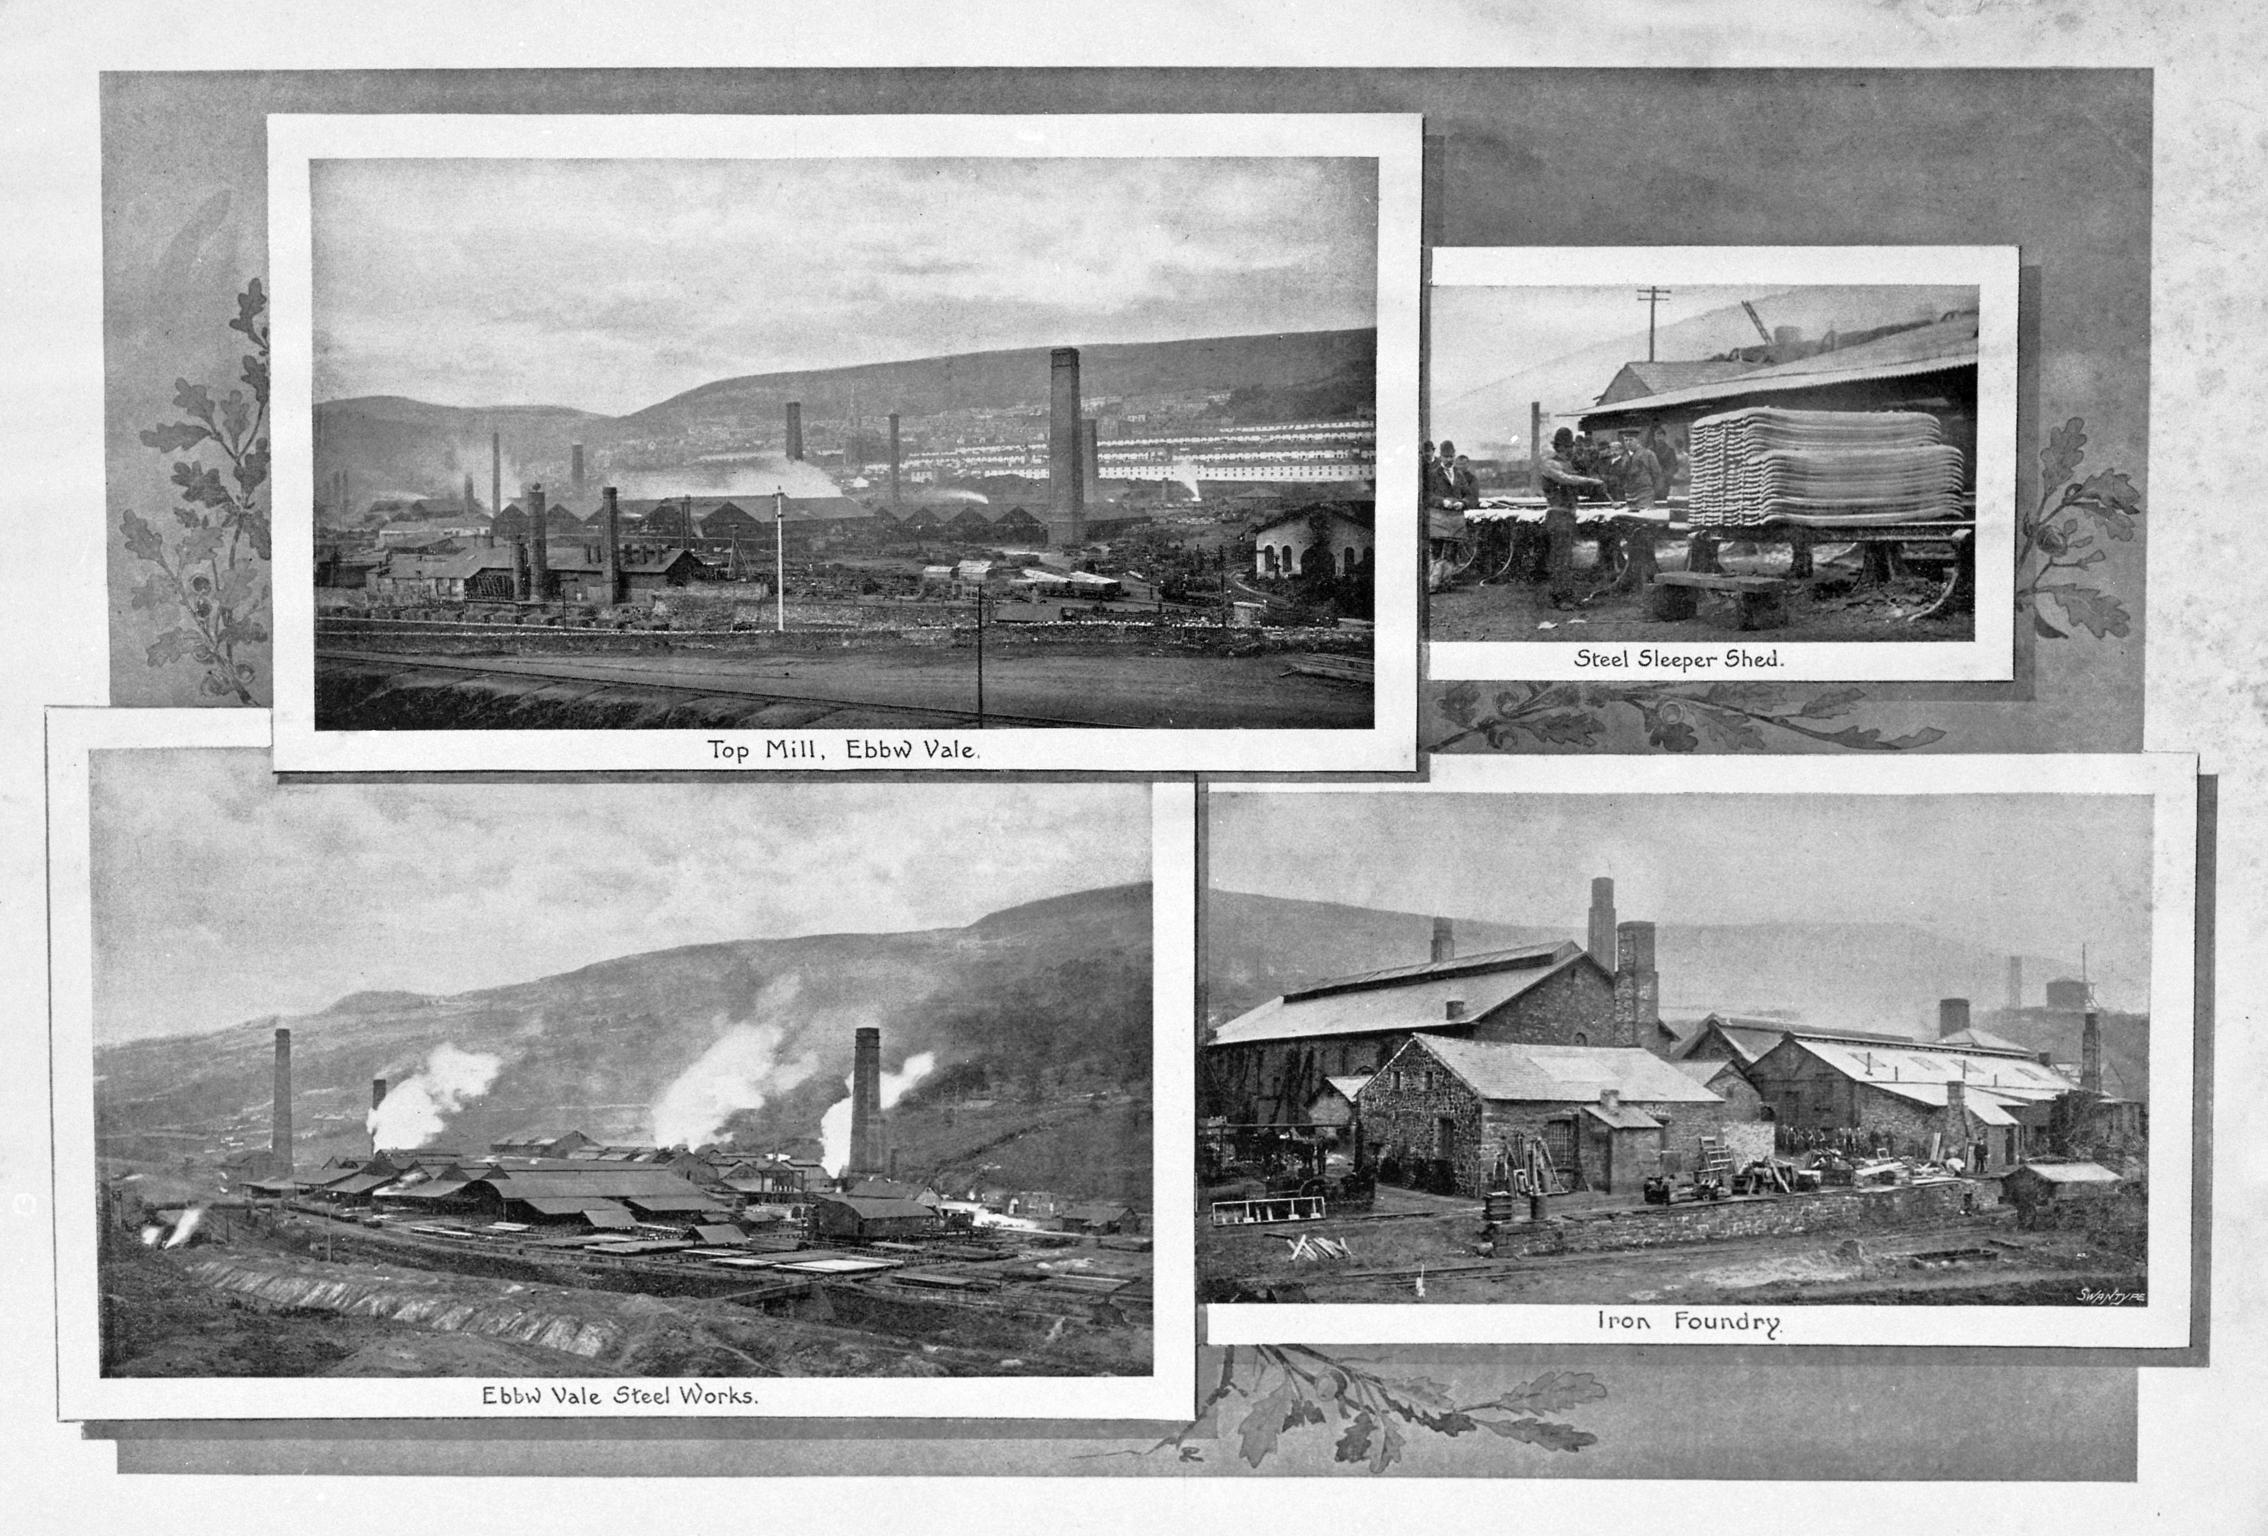 Views of Ebbw Vale steelworks, print